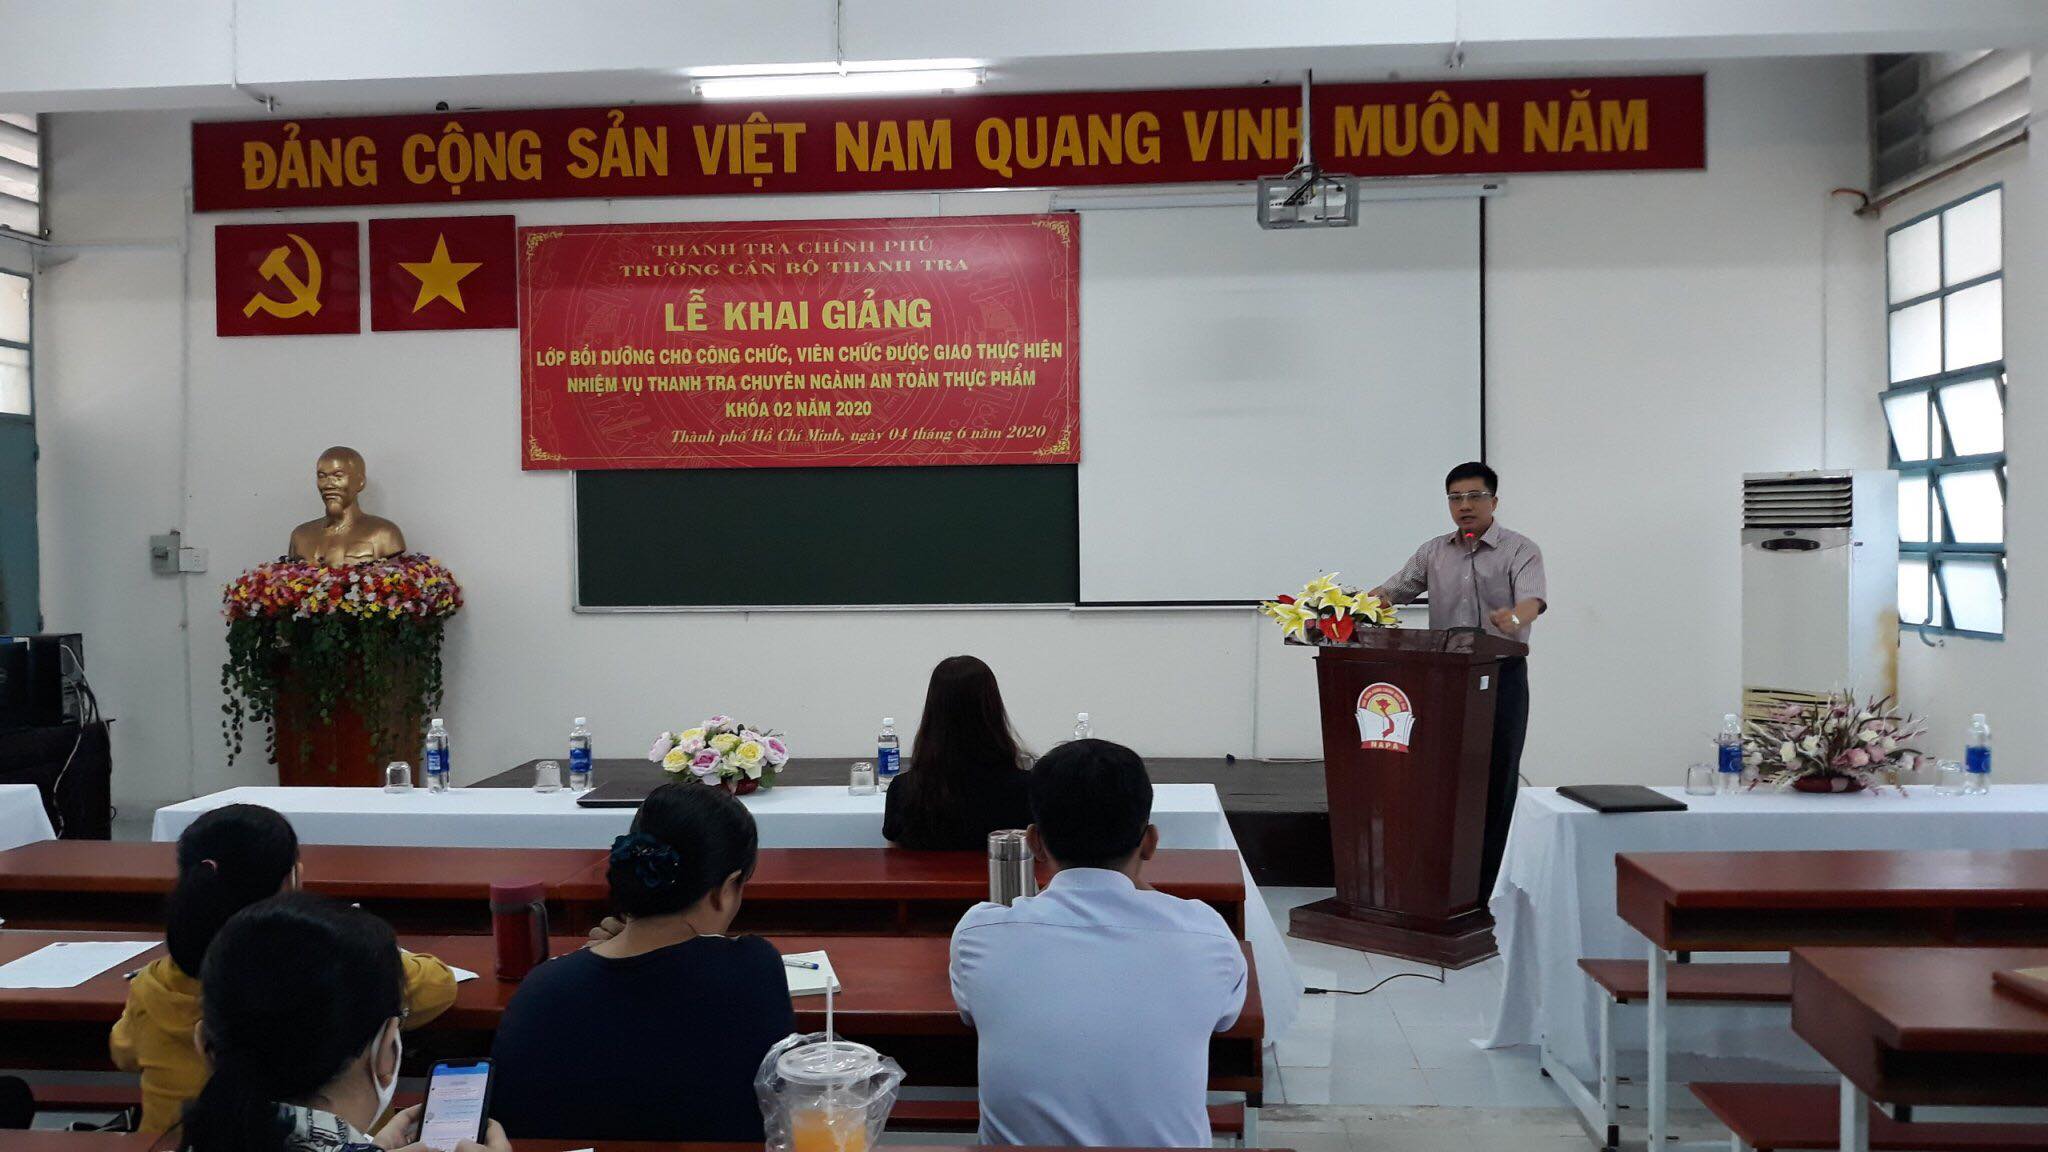 TS Trịnh Văn Toàn Phó Hiệu trưởng Nhà trường phát biểu khai giảng khóa học